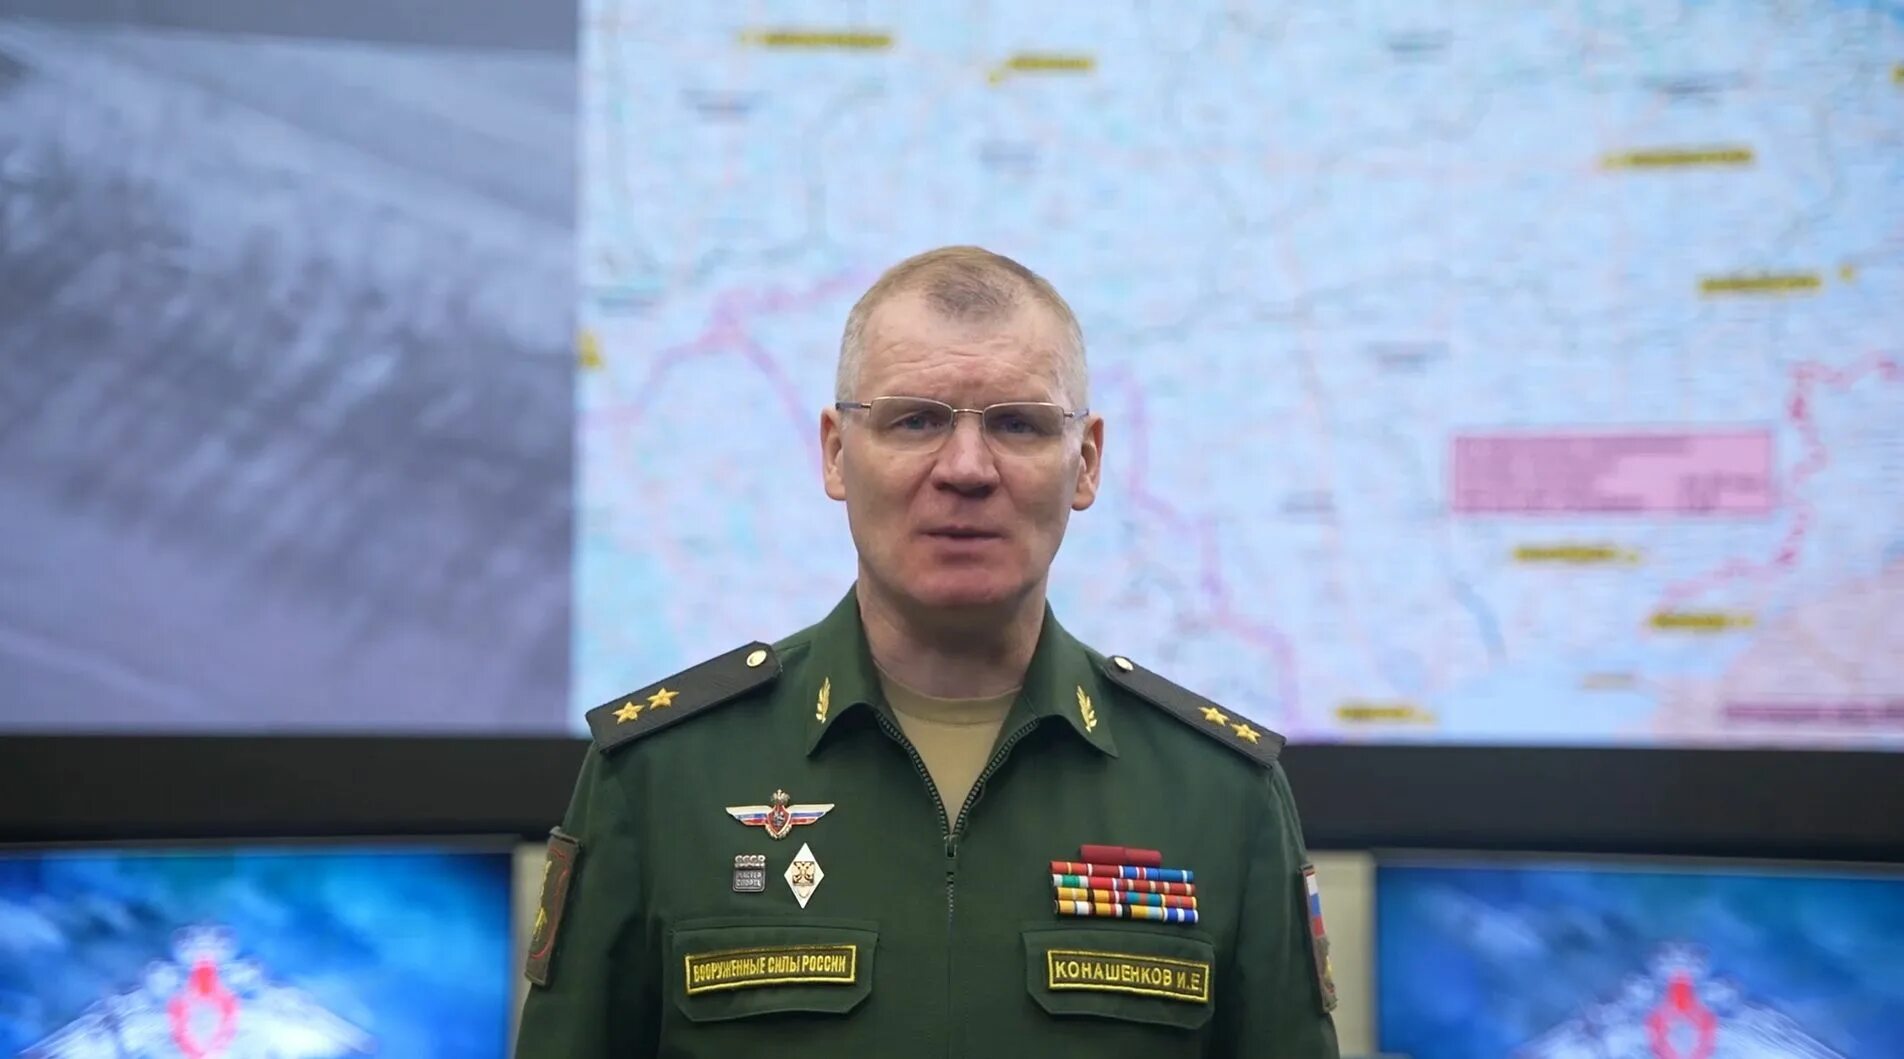 Конашенков 1 брифинг Министерства обороны.